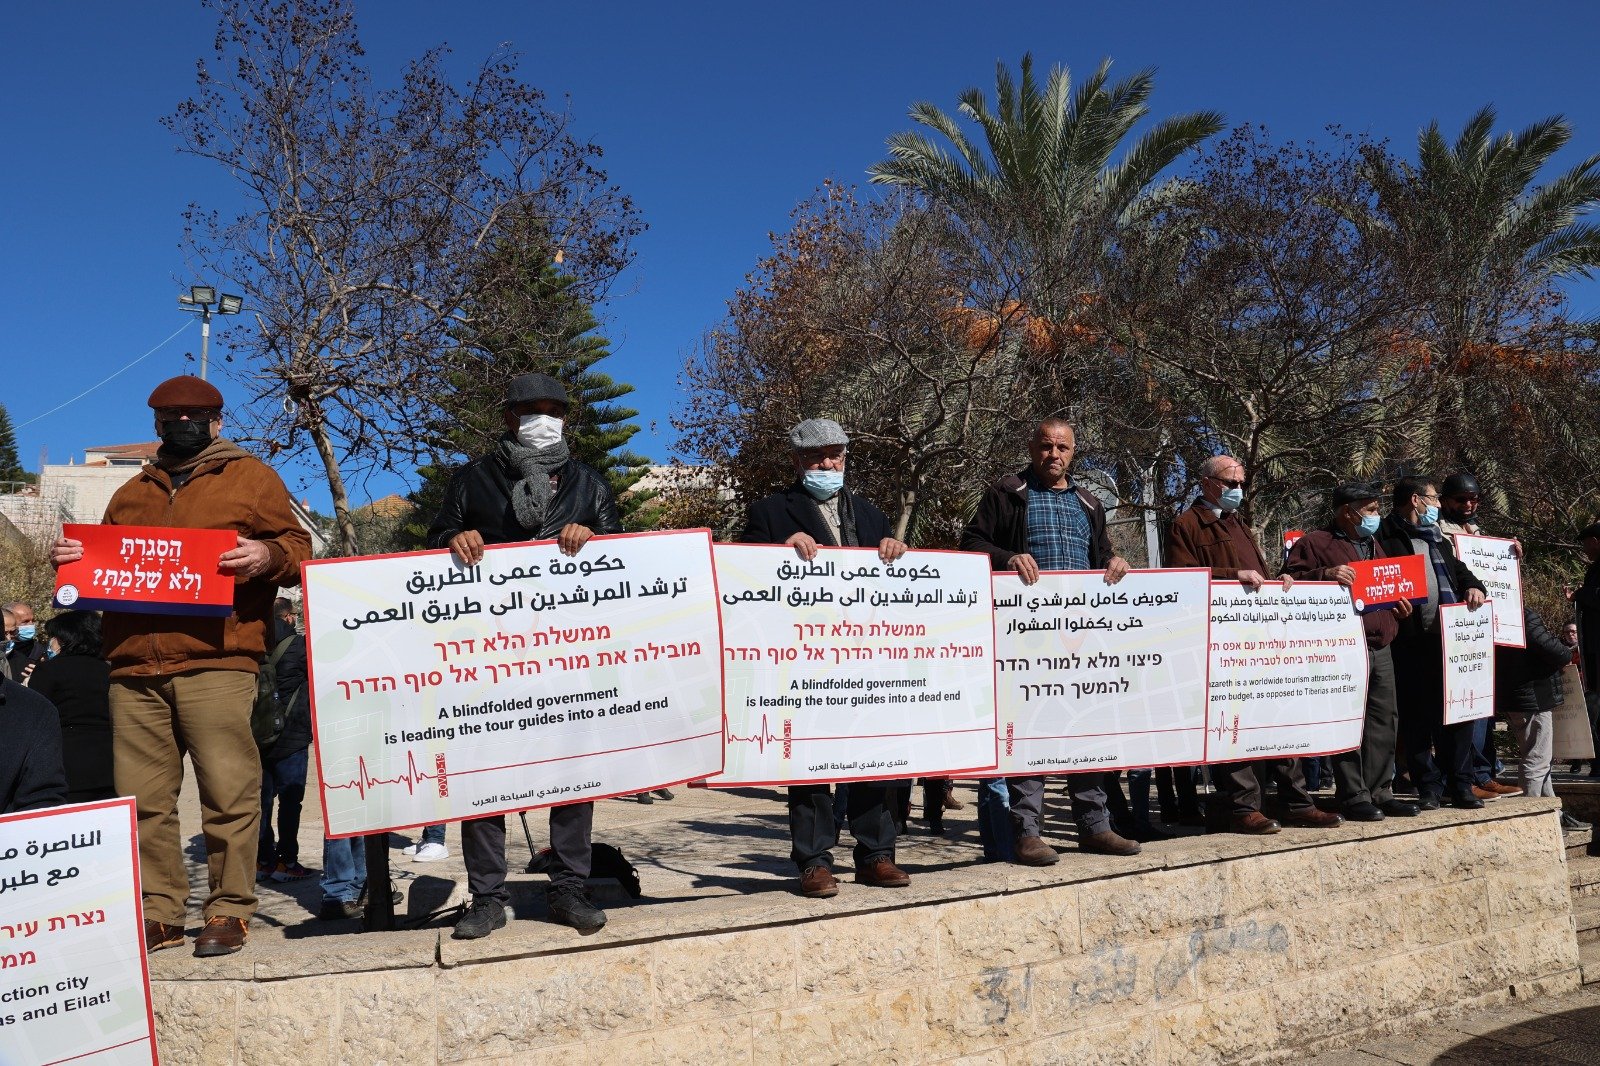 أزمة السياحة بسبب تقييدات الكورونا  - تظاهرة غاضبة في الناصرة-14